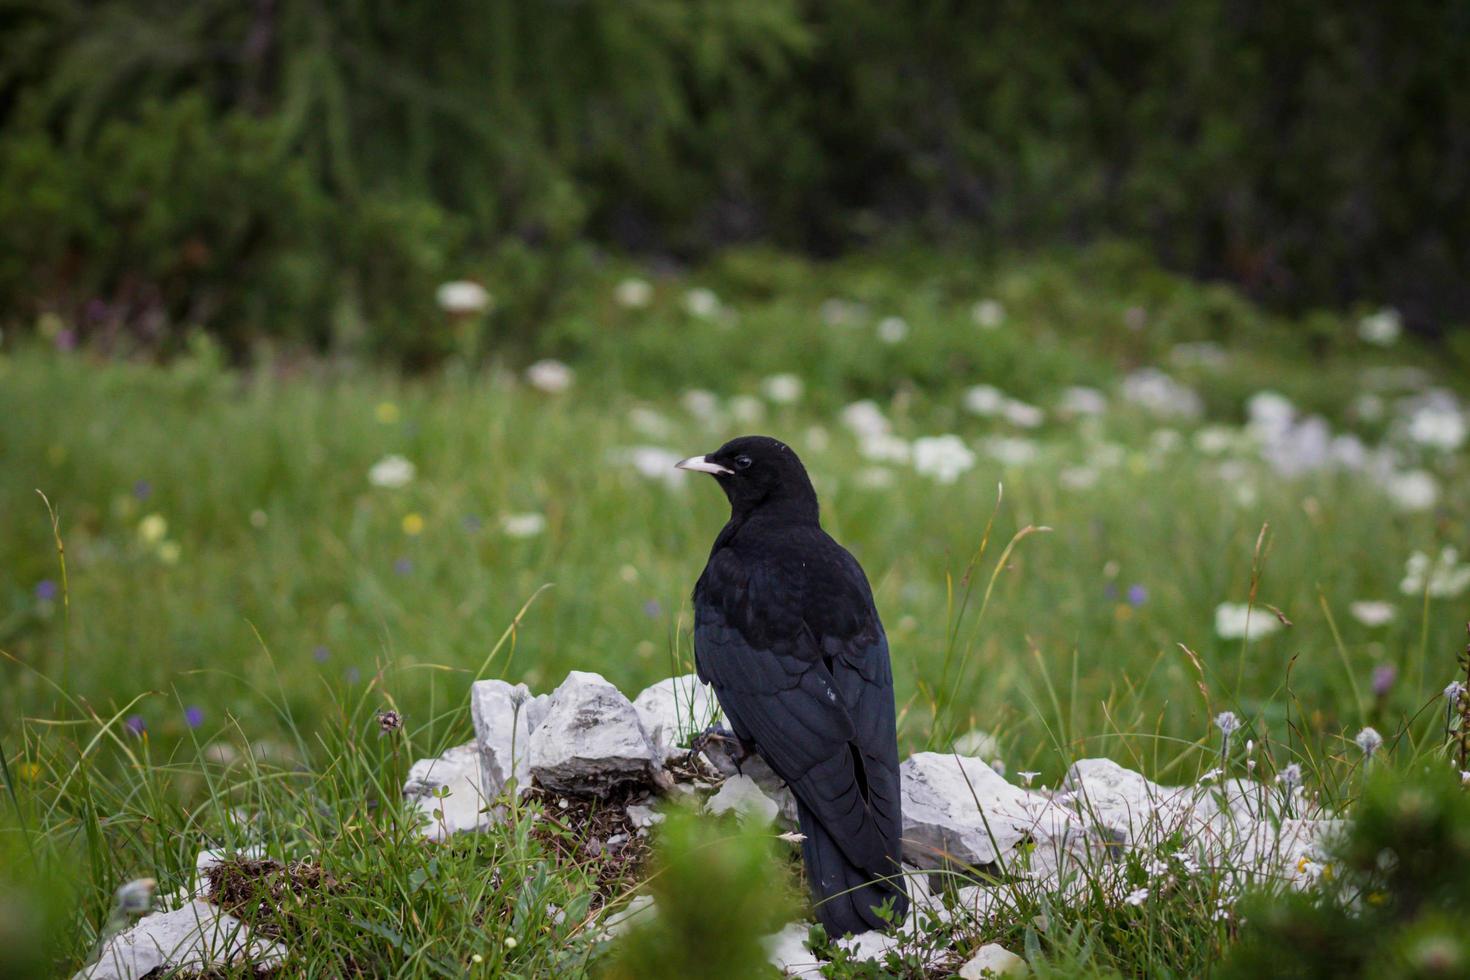 corvo nas pedras na grama foto